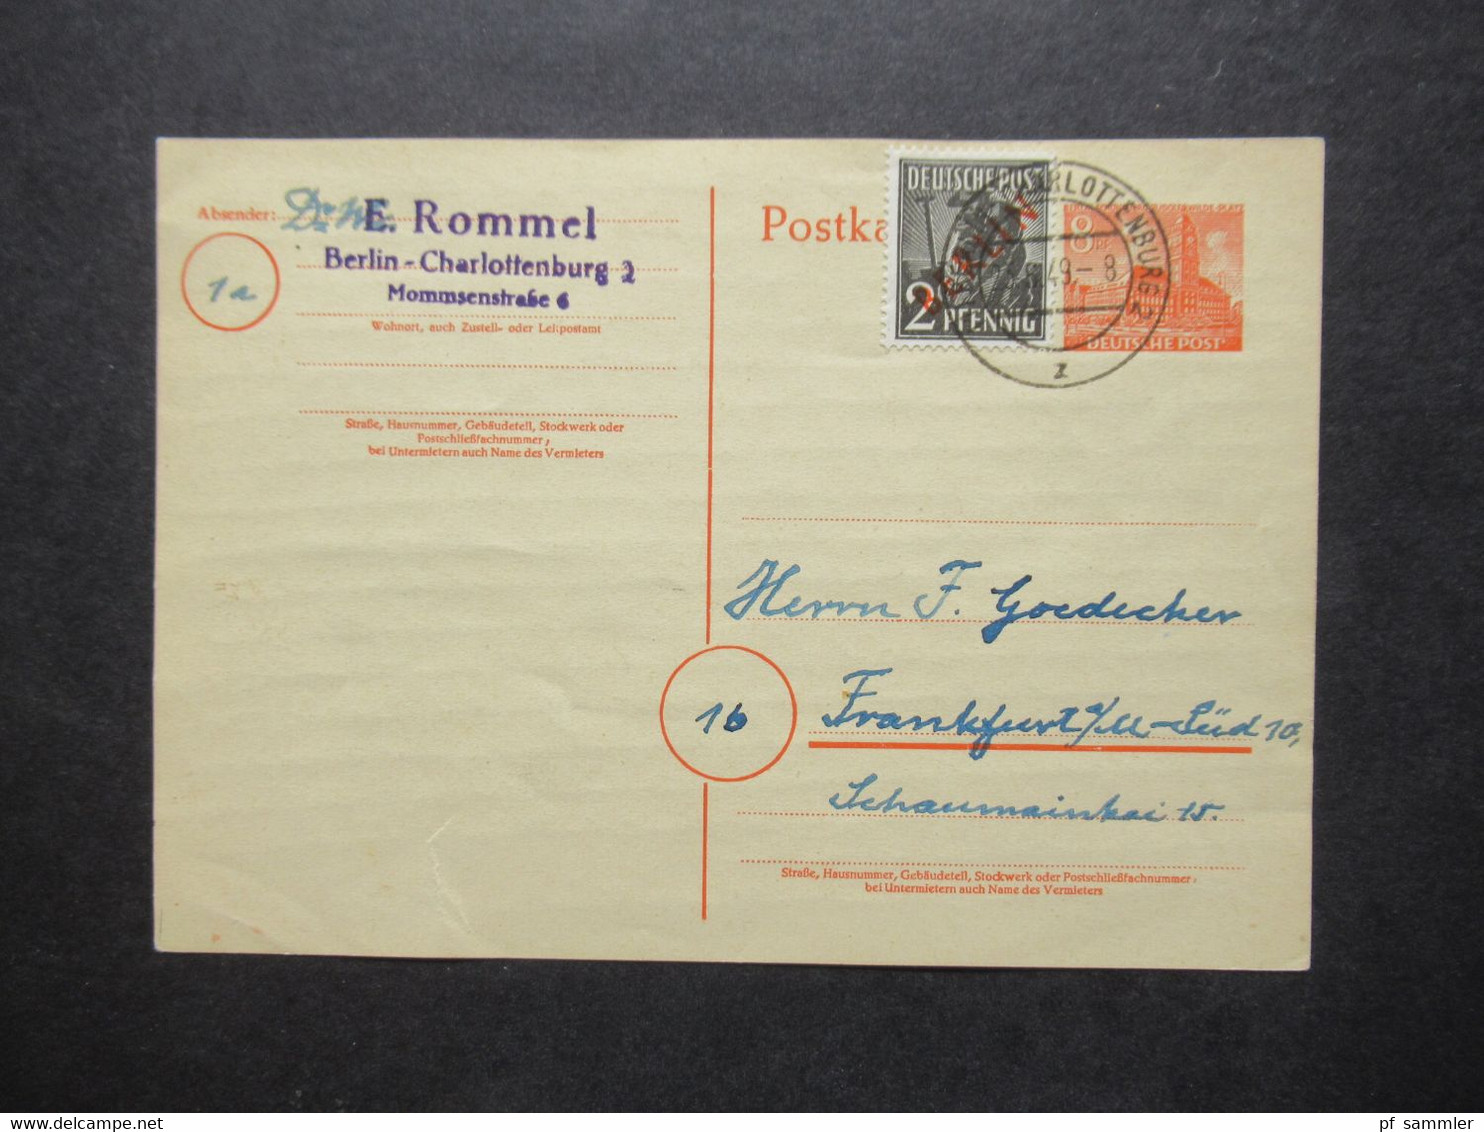 Berlin (West) 1949 GA P 4a Mit Zusatzfrankatur Rotaufdruck Als Fern PK Berlin - FFM Absender Dr. W. Rommel - Postcards - Used